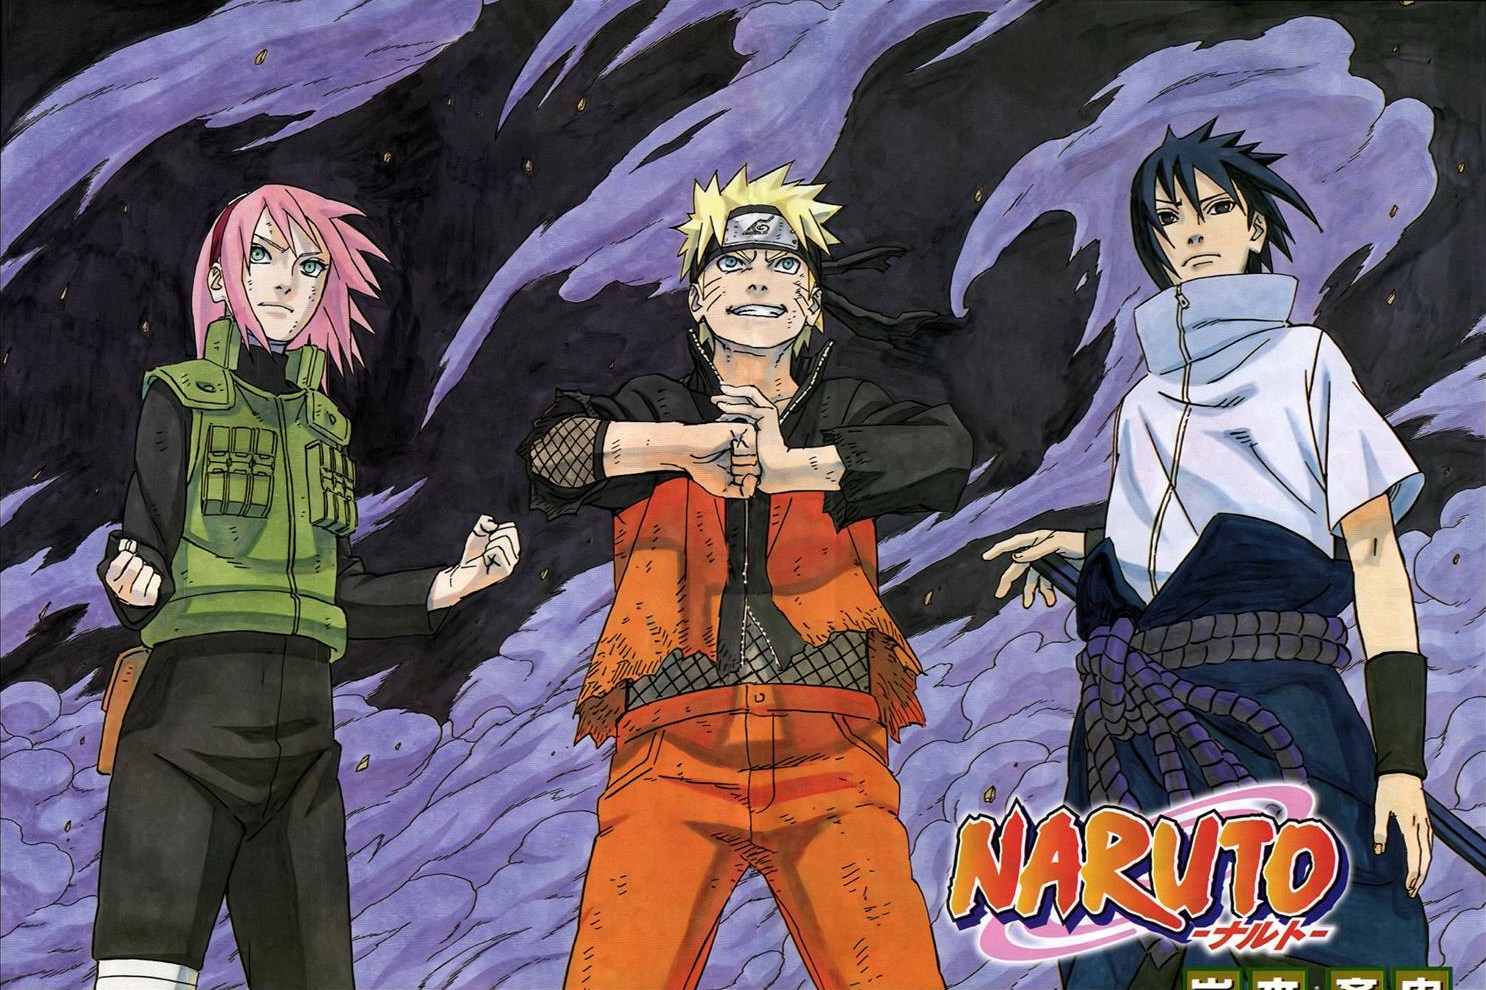 Naruto Team 7 Poster by weissdrum on DeviantArt